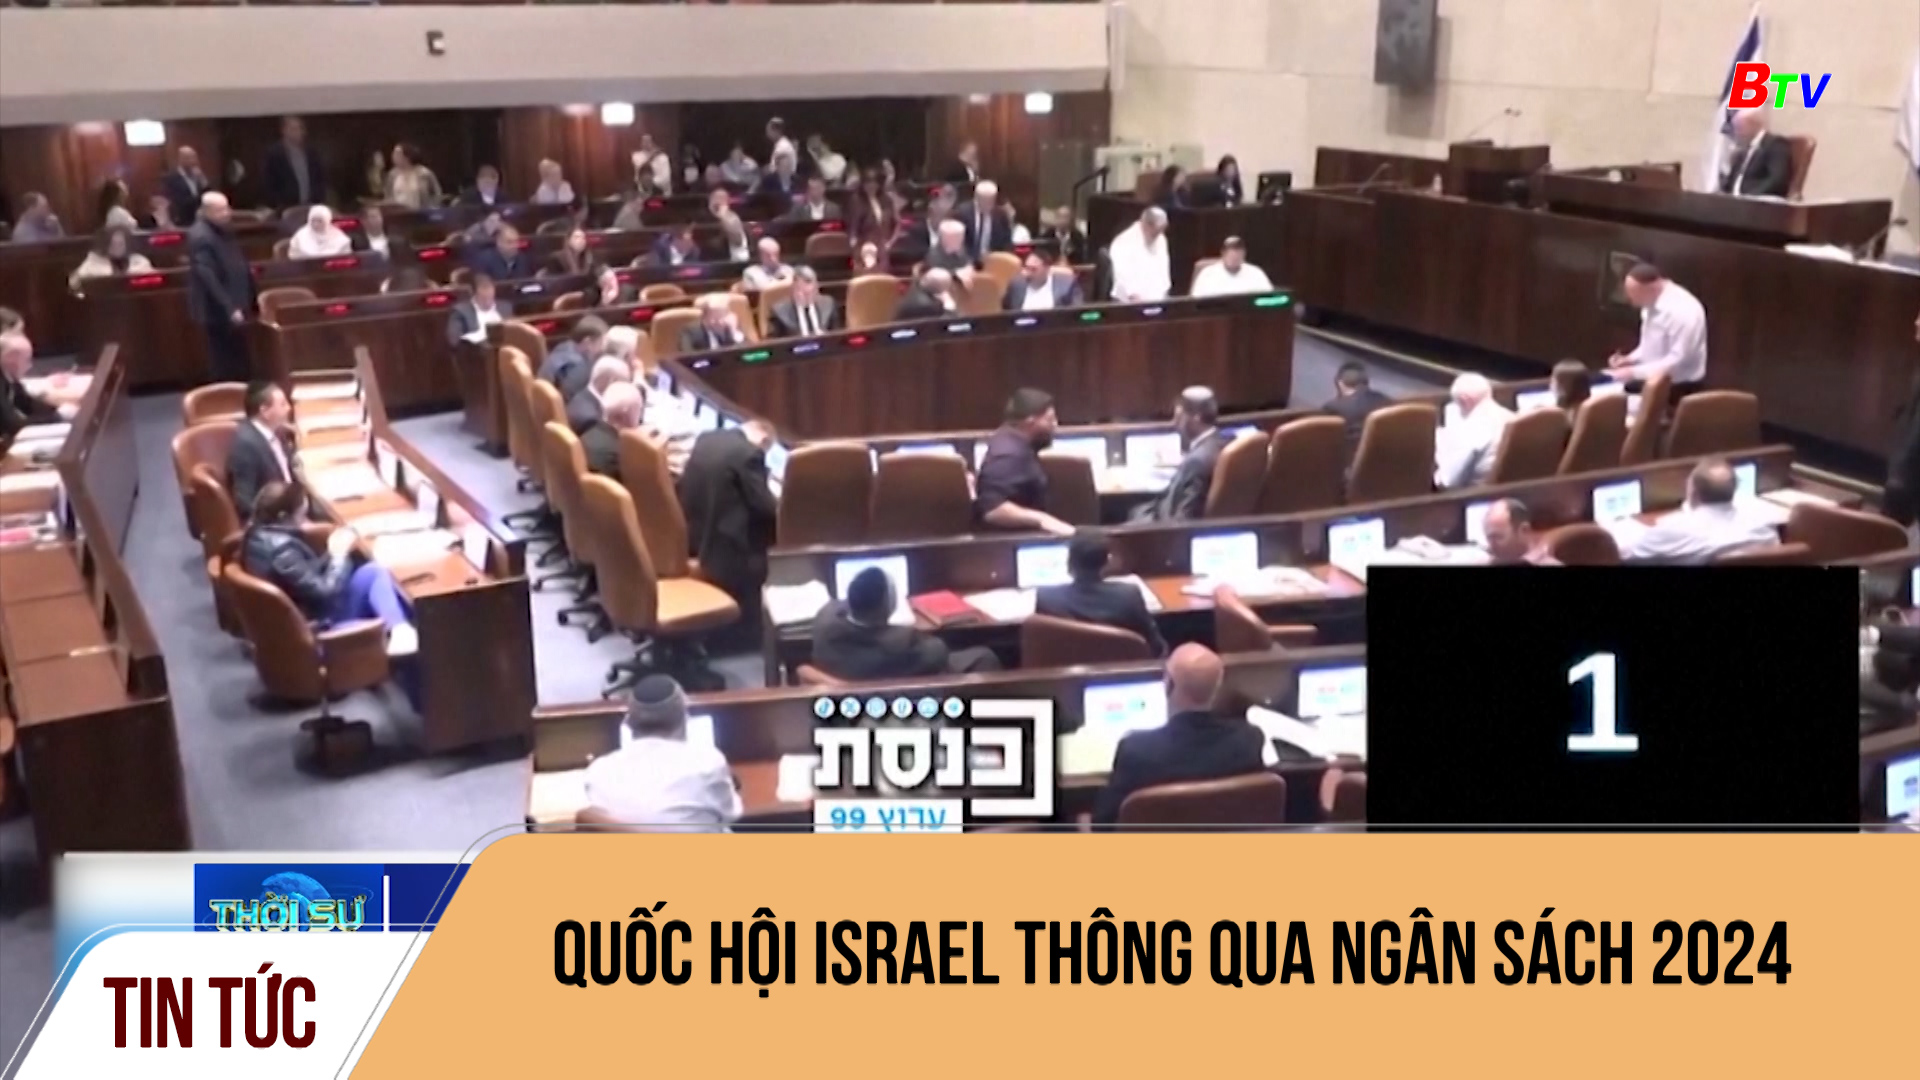 Quốc hội Israel thông qua ngân sách 2024